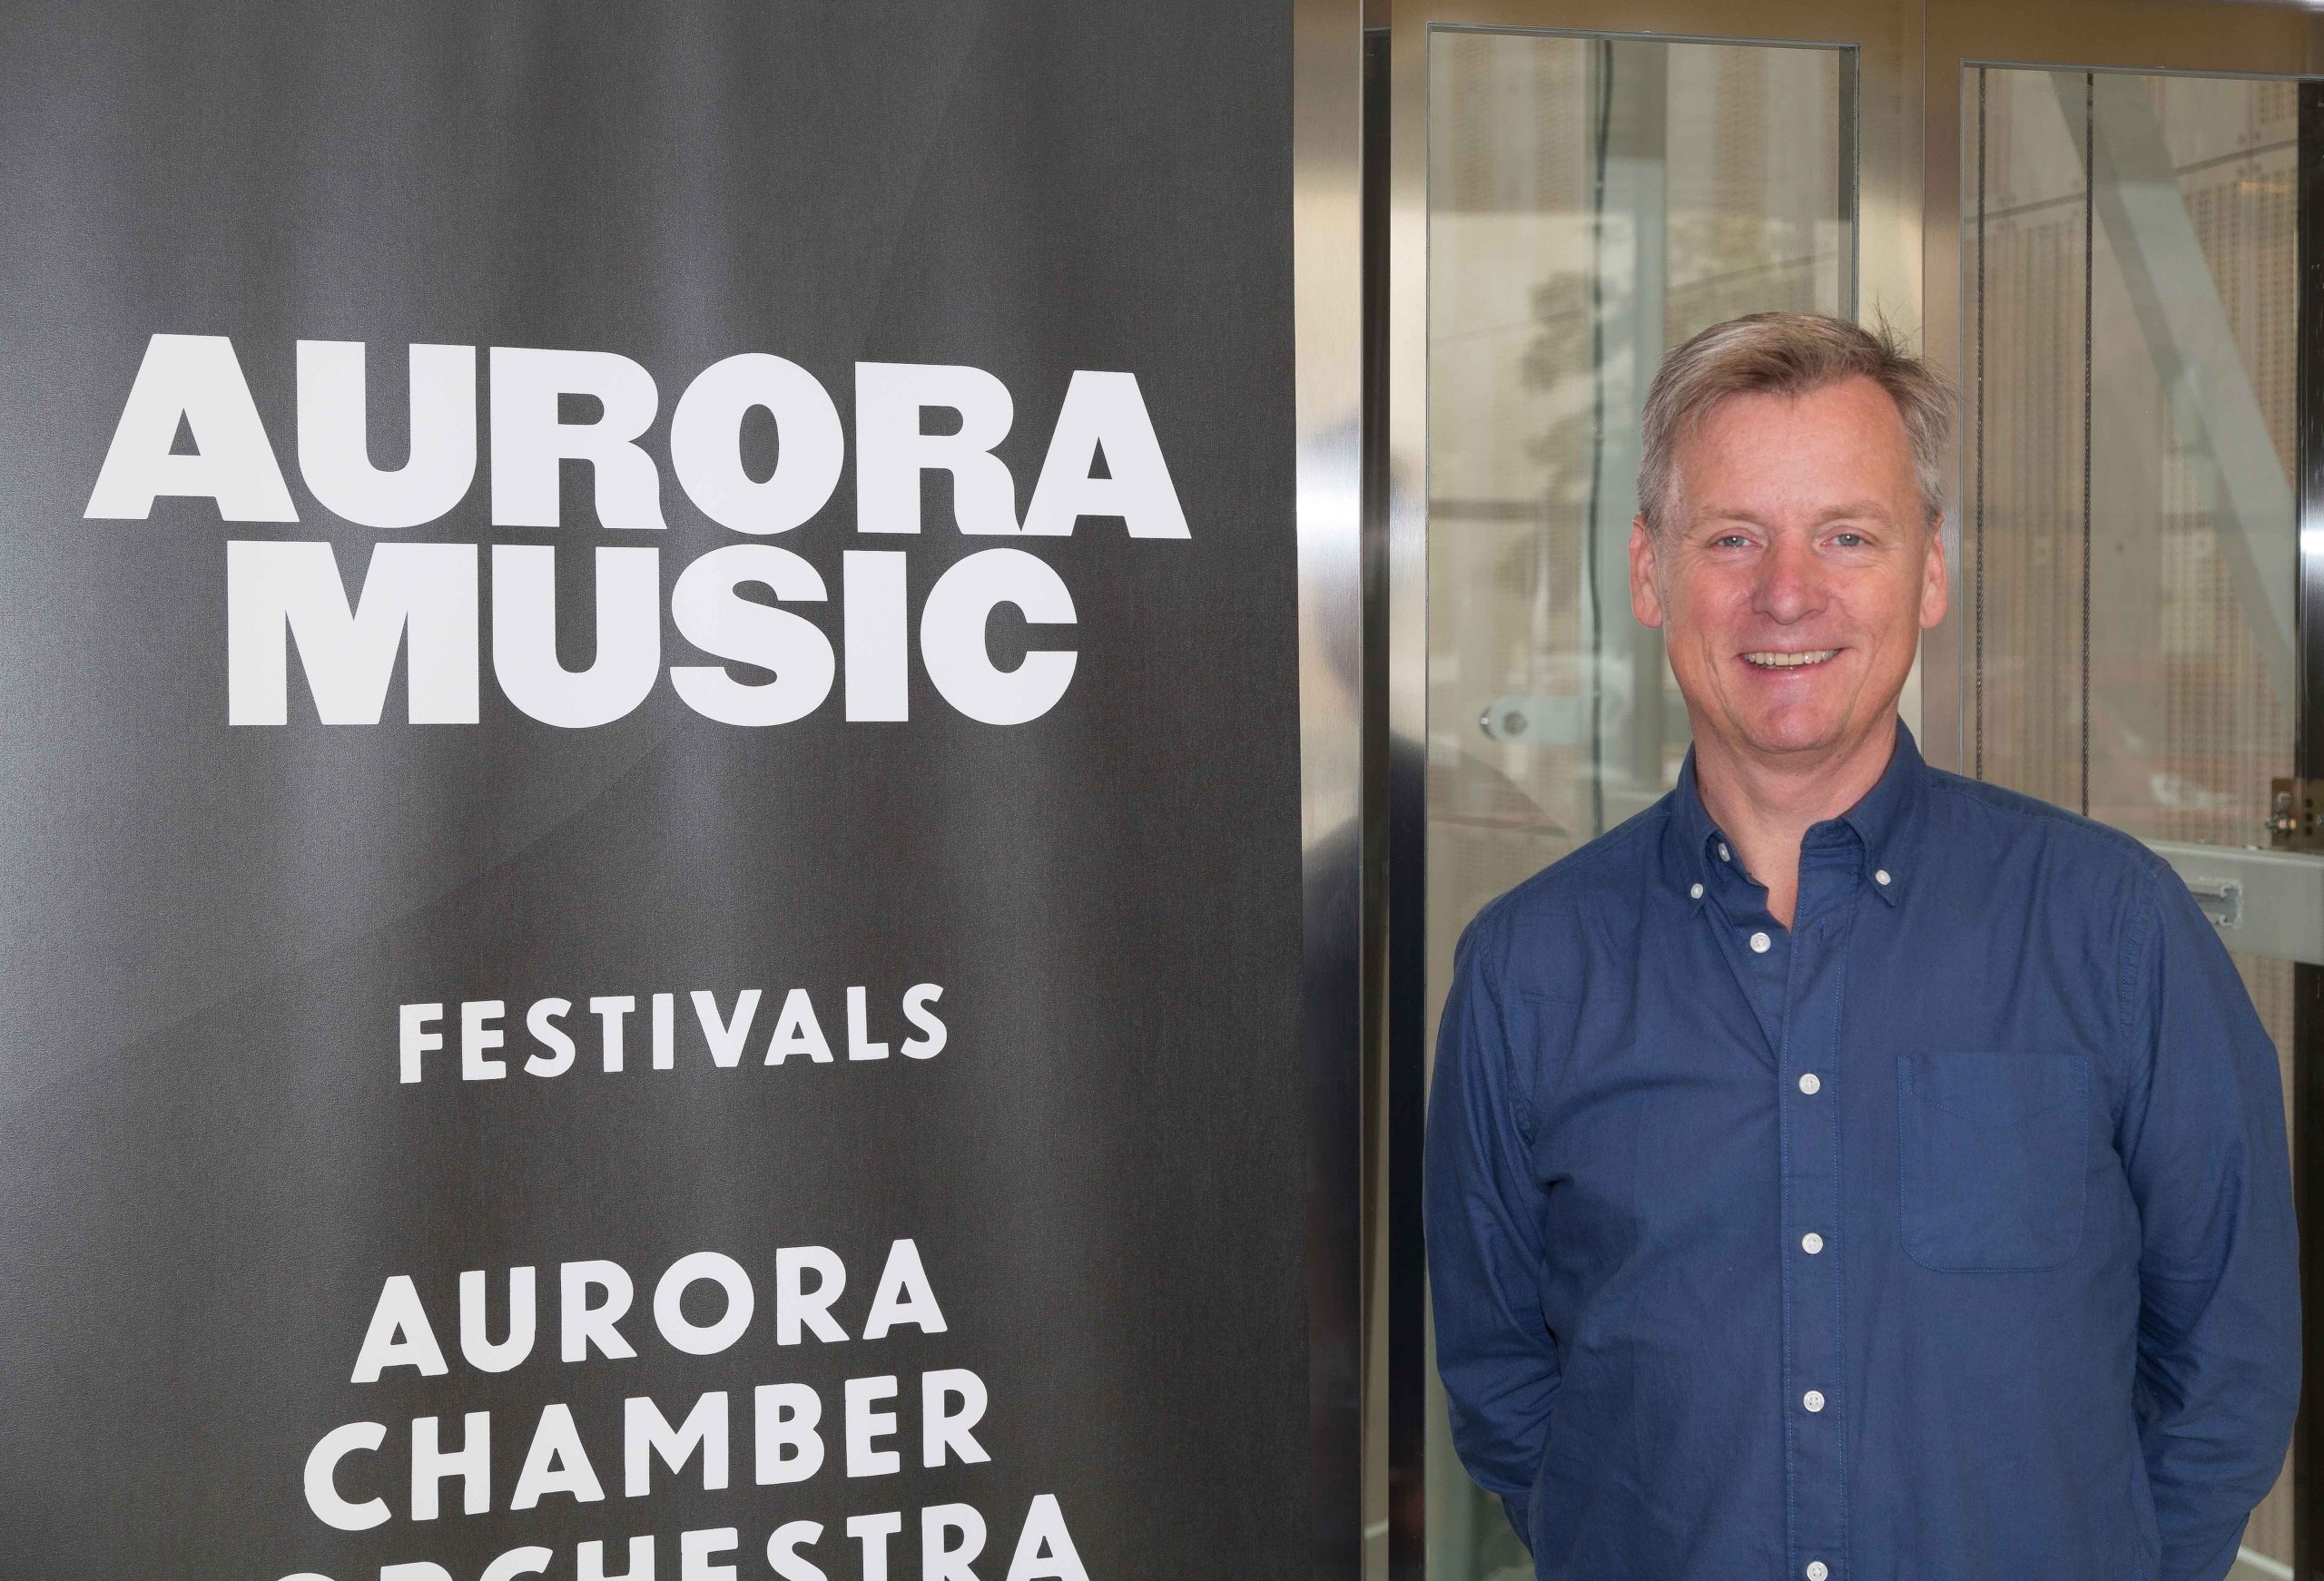 Aurora Chamber Music flyttar från Västsverige